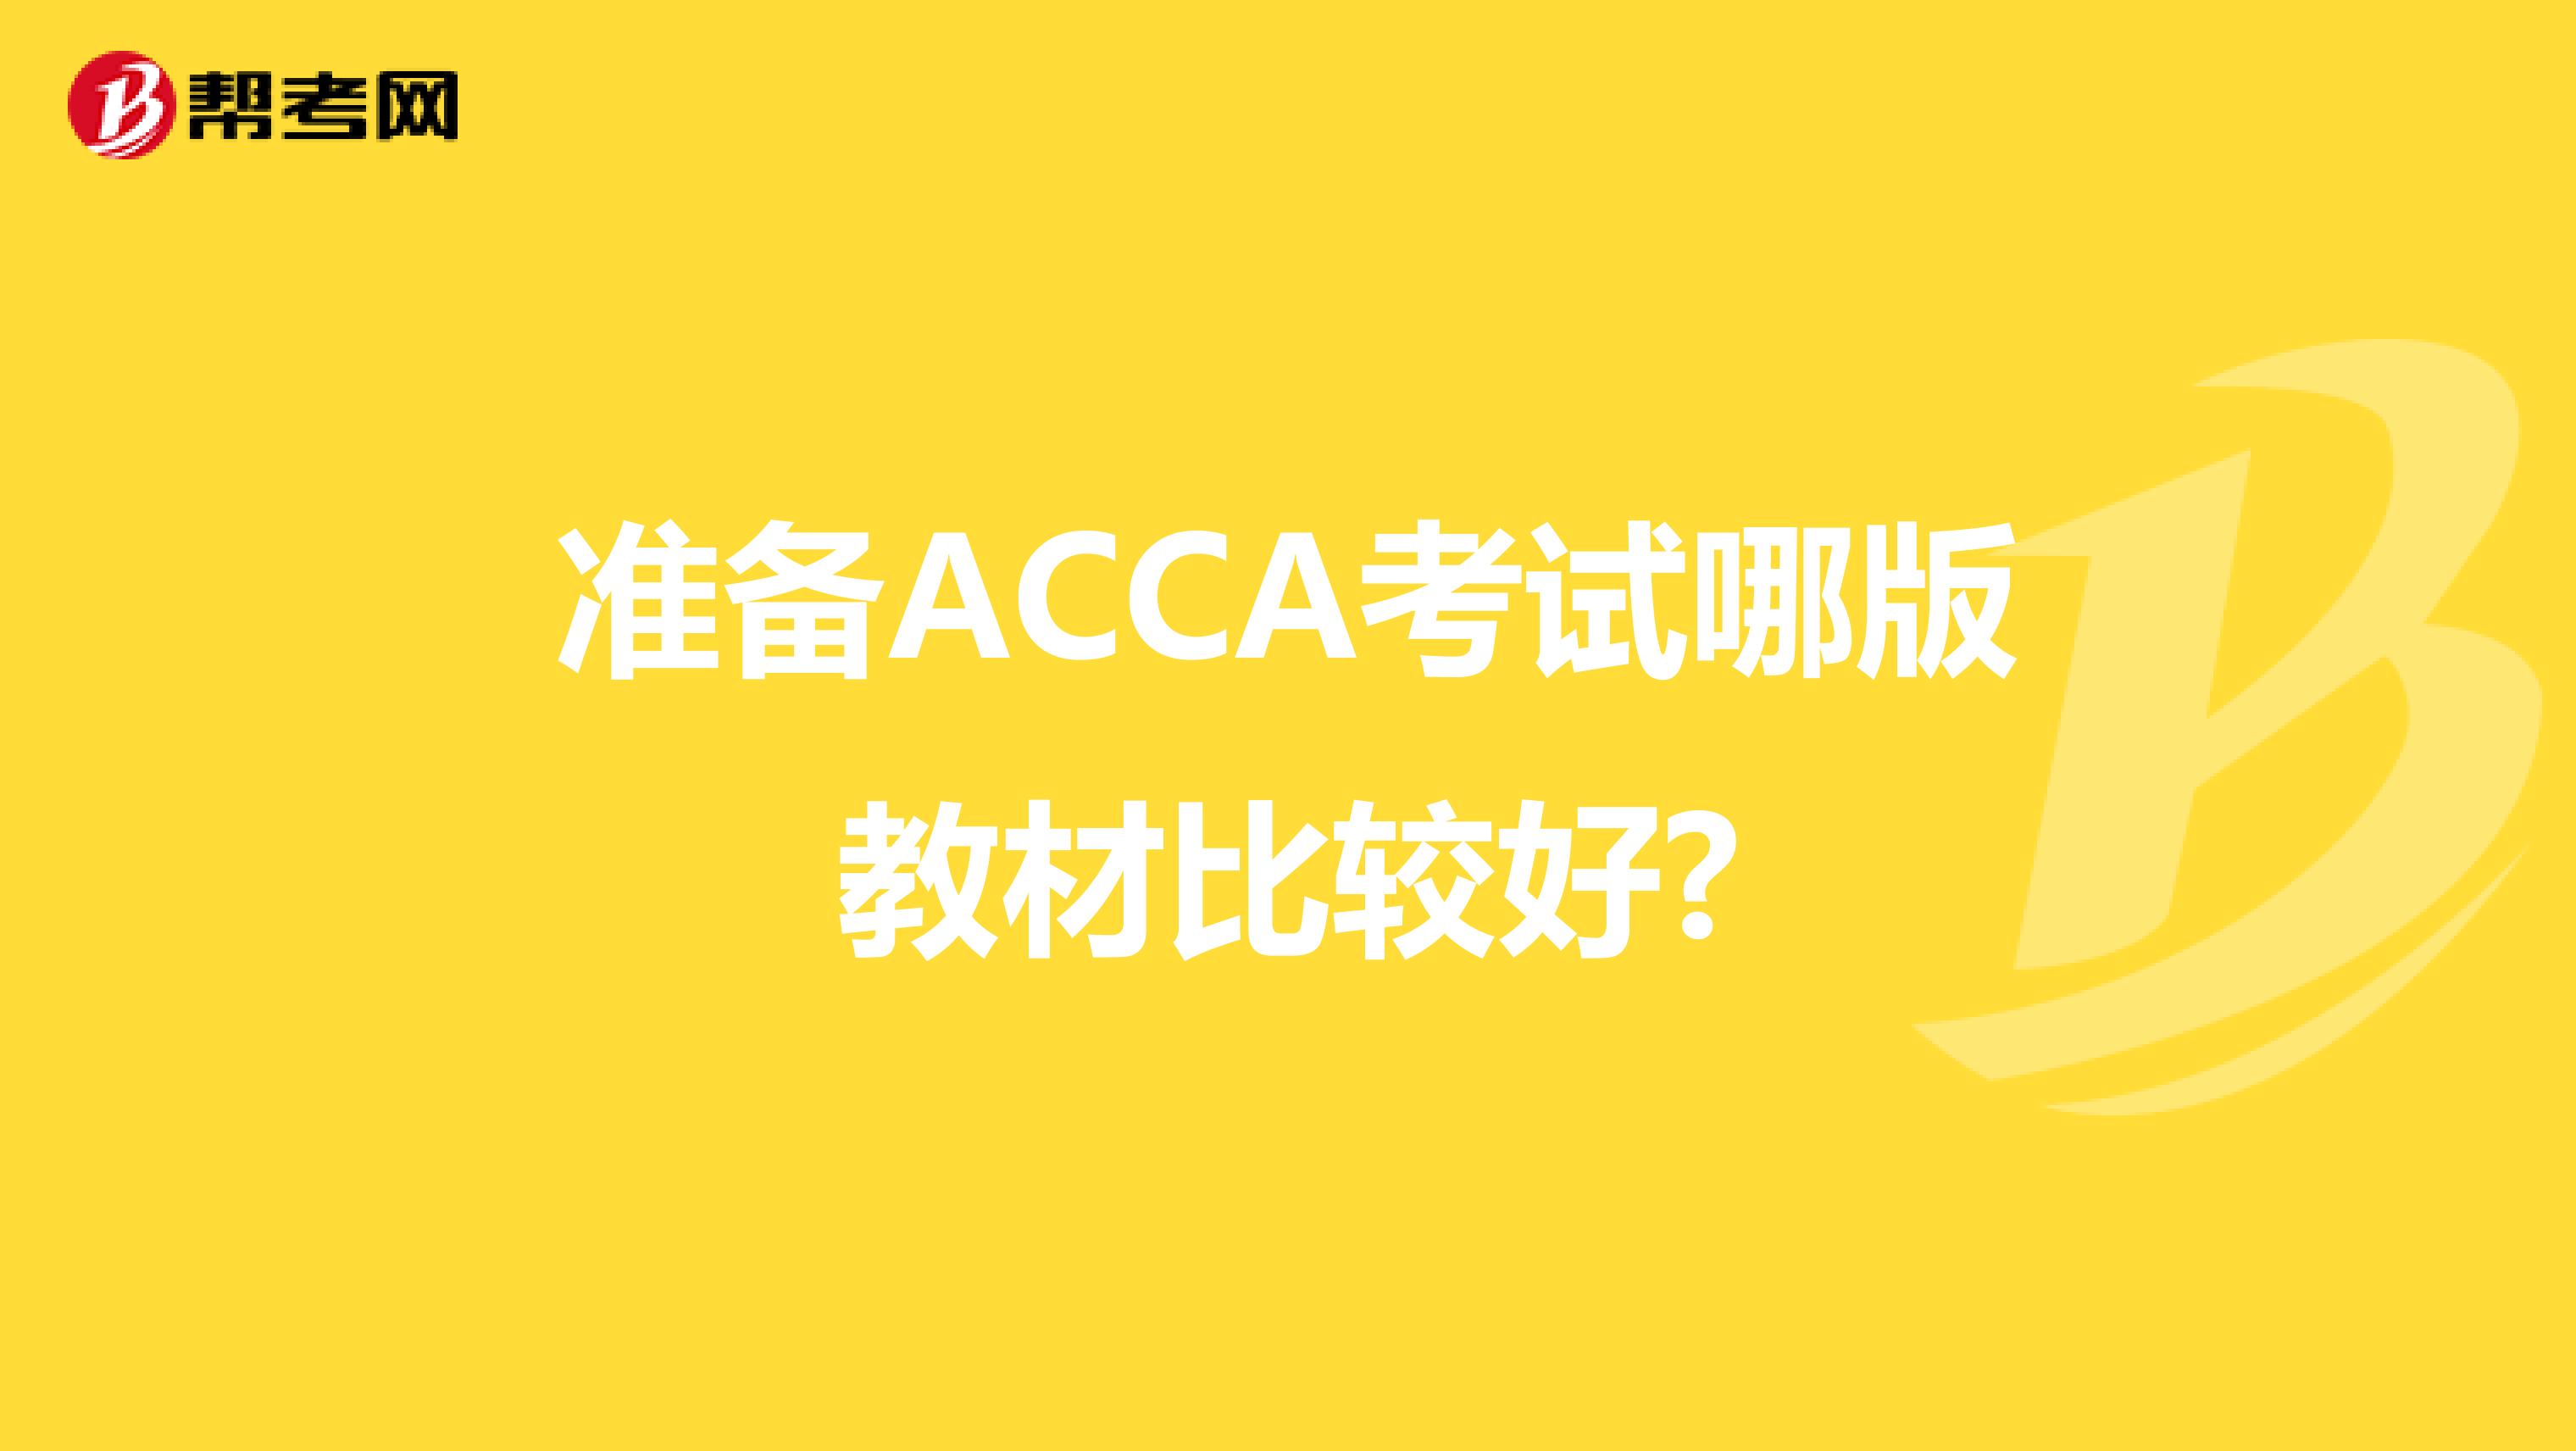 准备ACCA考试哪版教材比较好?